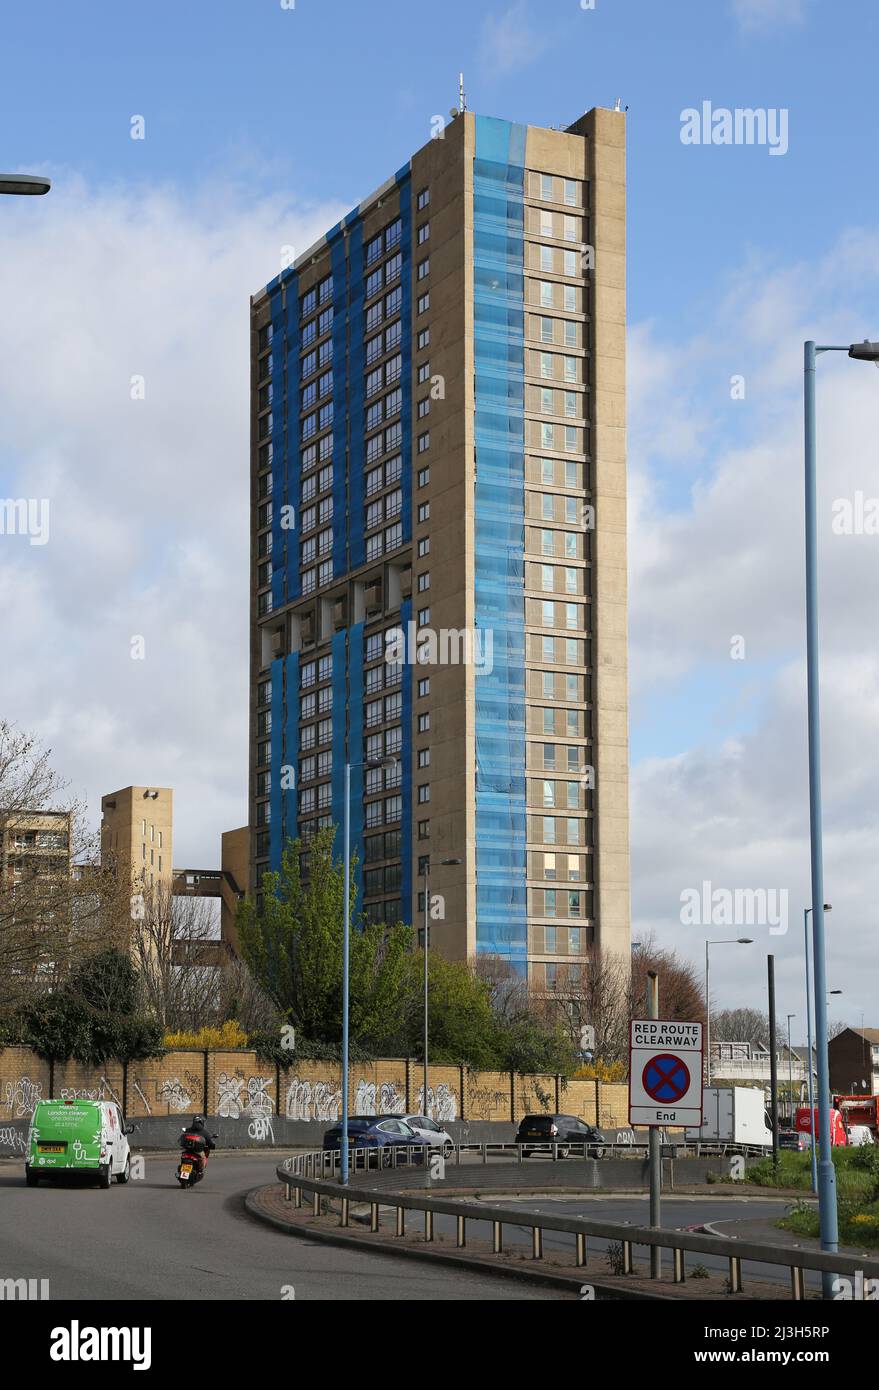 Balfron Tower, London. Berühmter brutalistischer Turmblock von Architekt Erno Goldfinger. Renovierung von Luxuswohnungen. Zeigt temporäres Netting an. Stockfoto